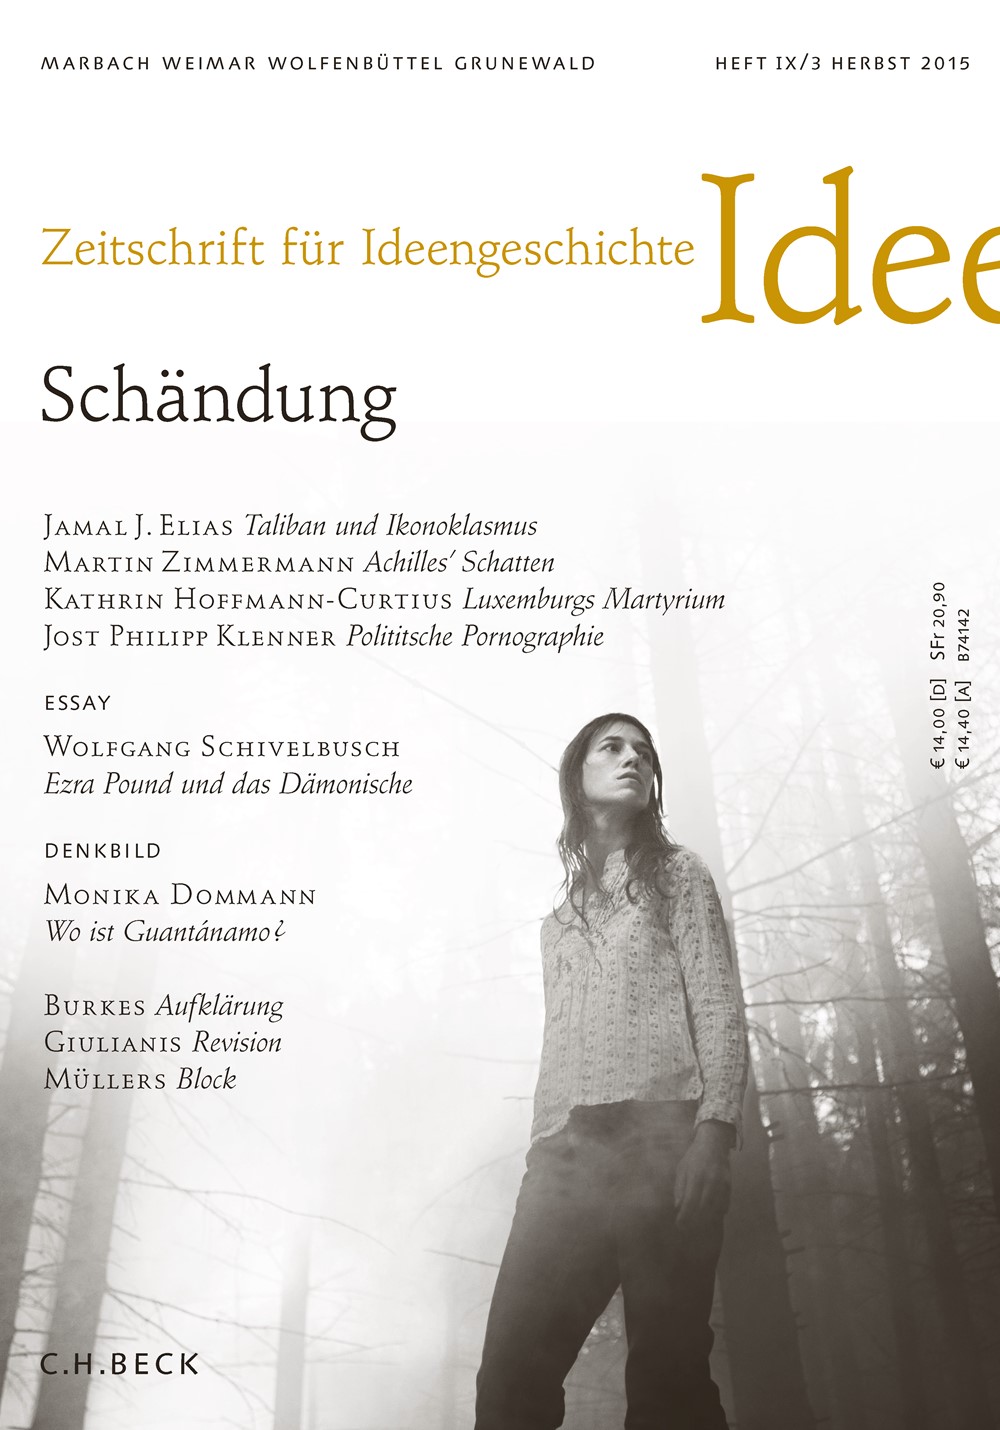 Cover von Heft IX/3 Herbst 2015